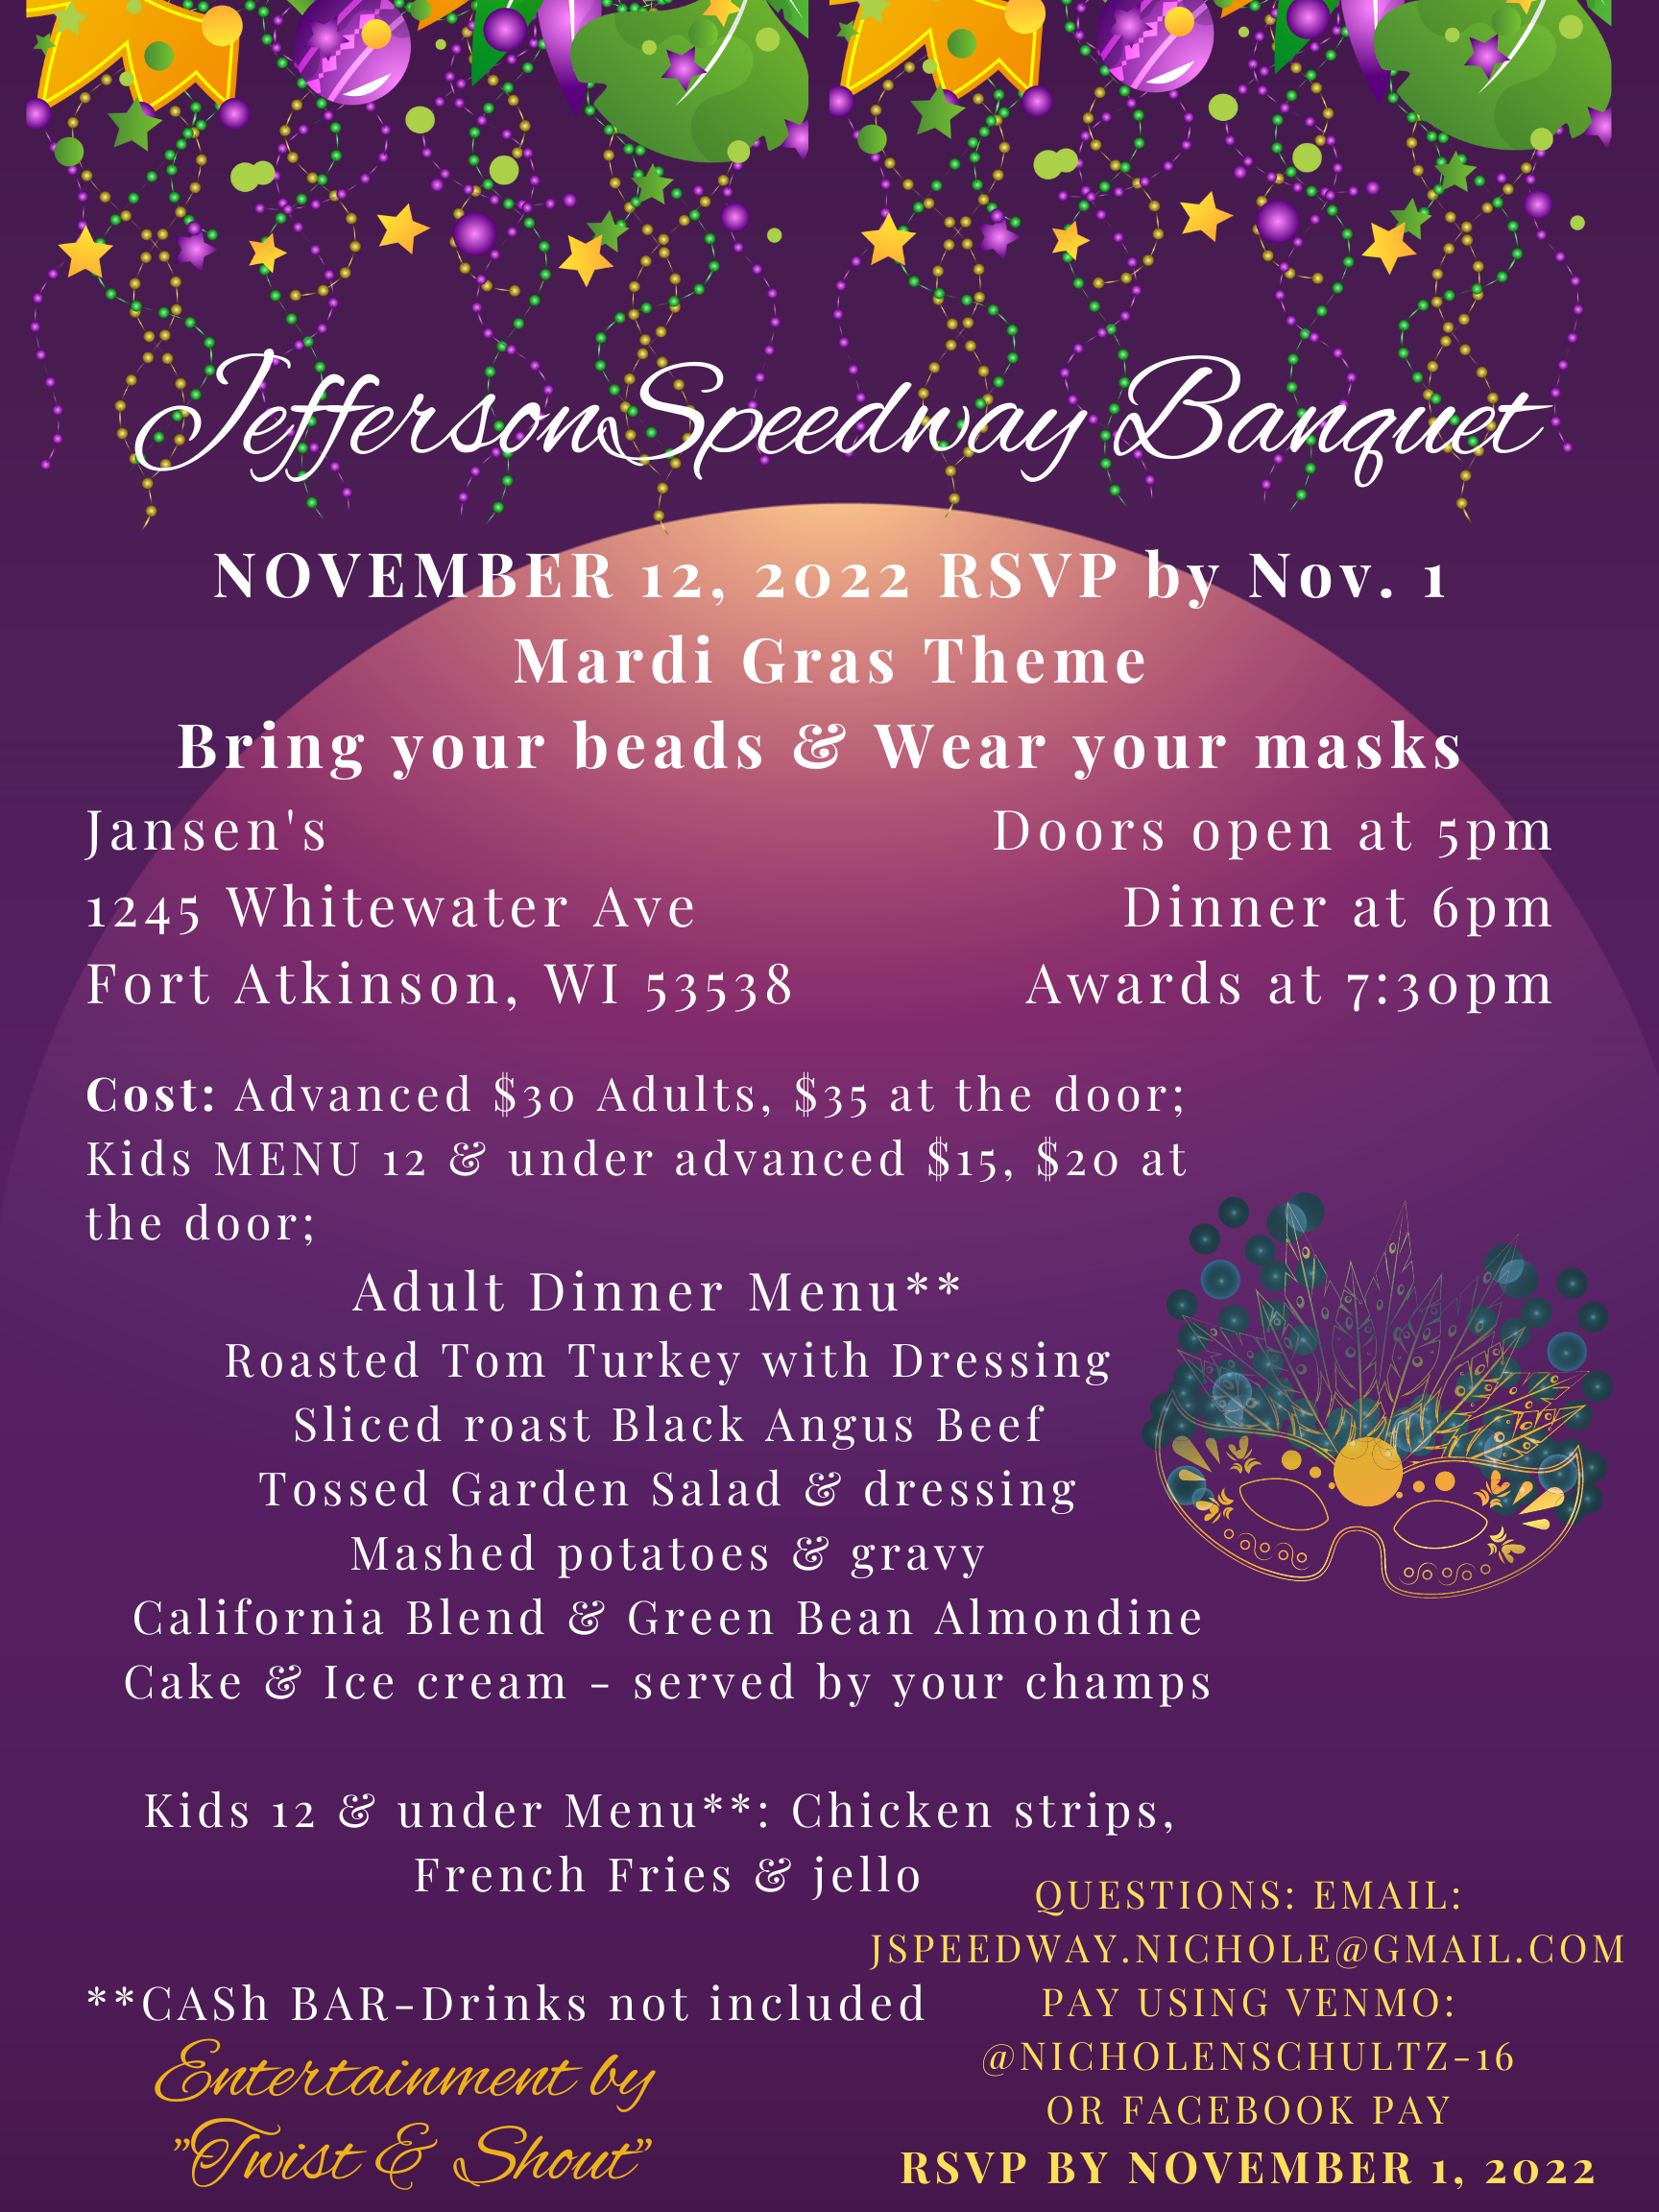 Jefferson Speedway Banquet November 12, 2022